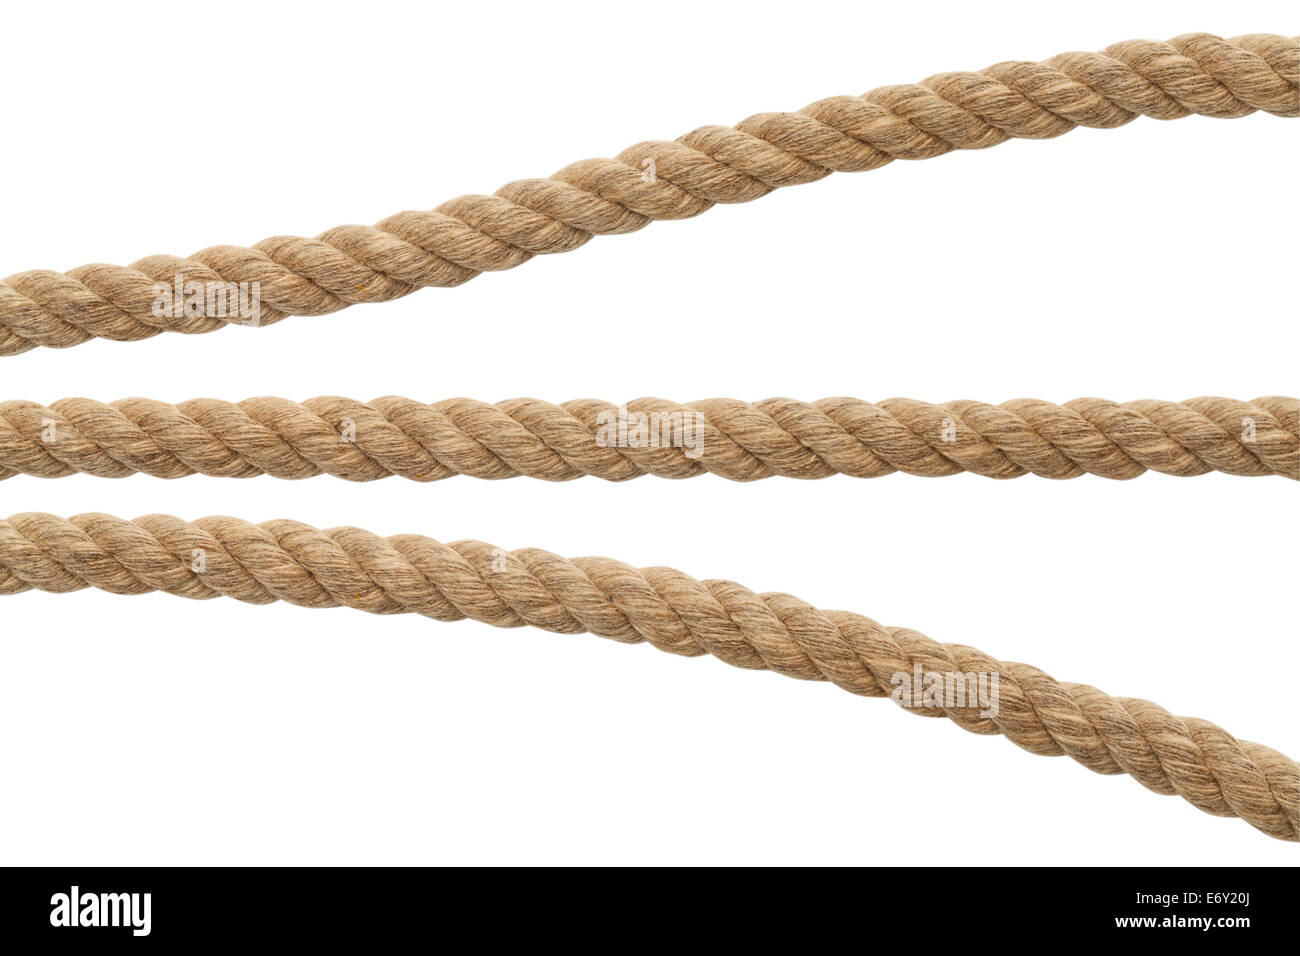 Segmente des braunen Seil, Isolated on White Background. Stockfoto